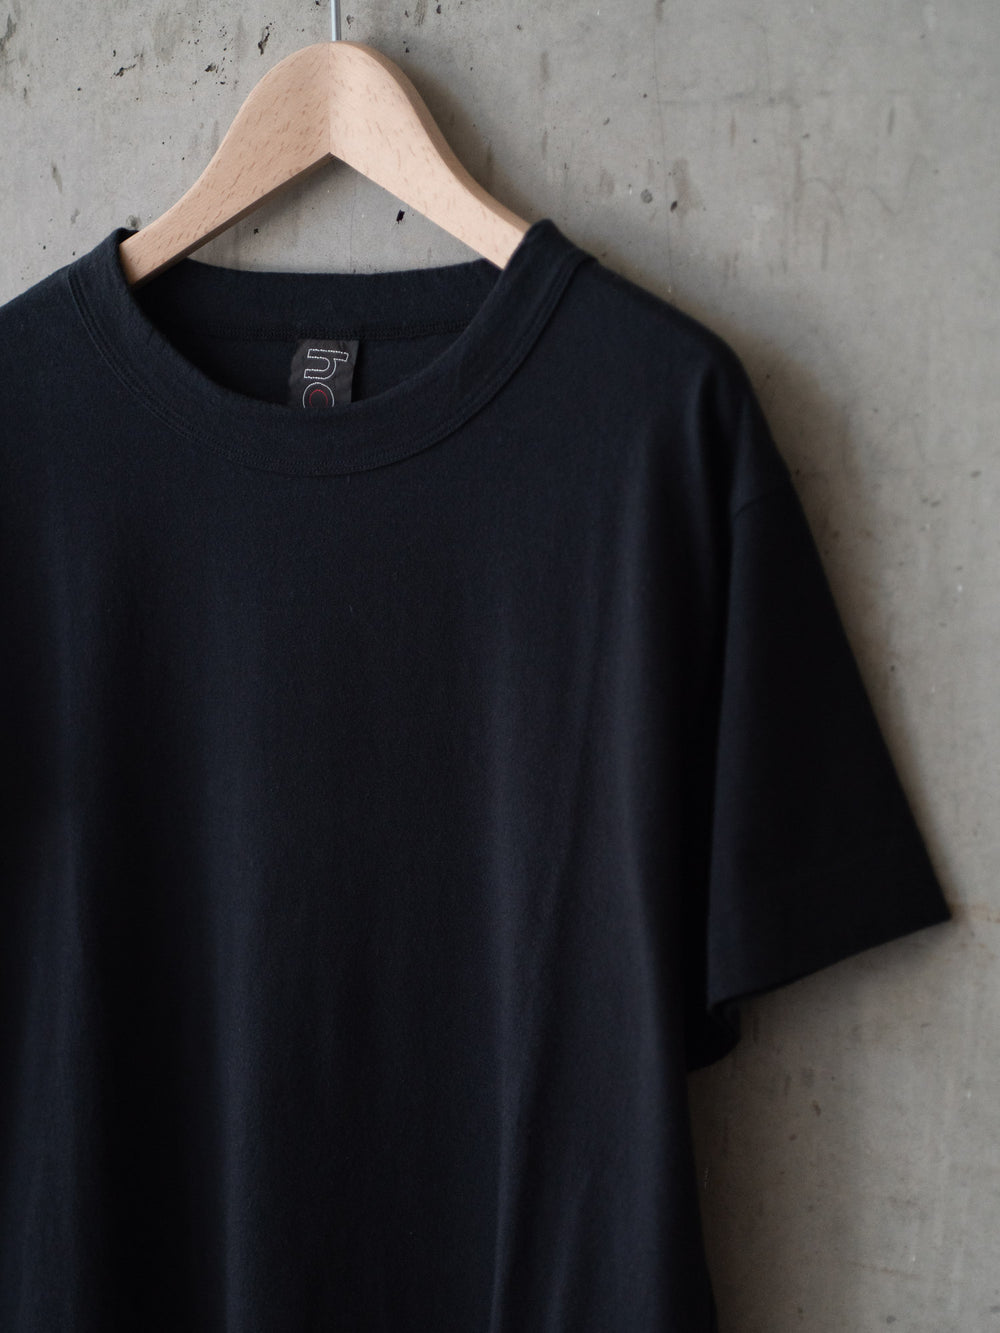 Short Sleeve T-Shirt – Black